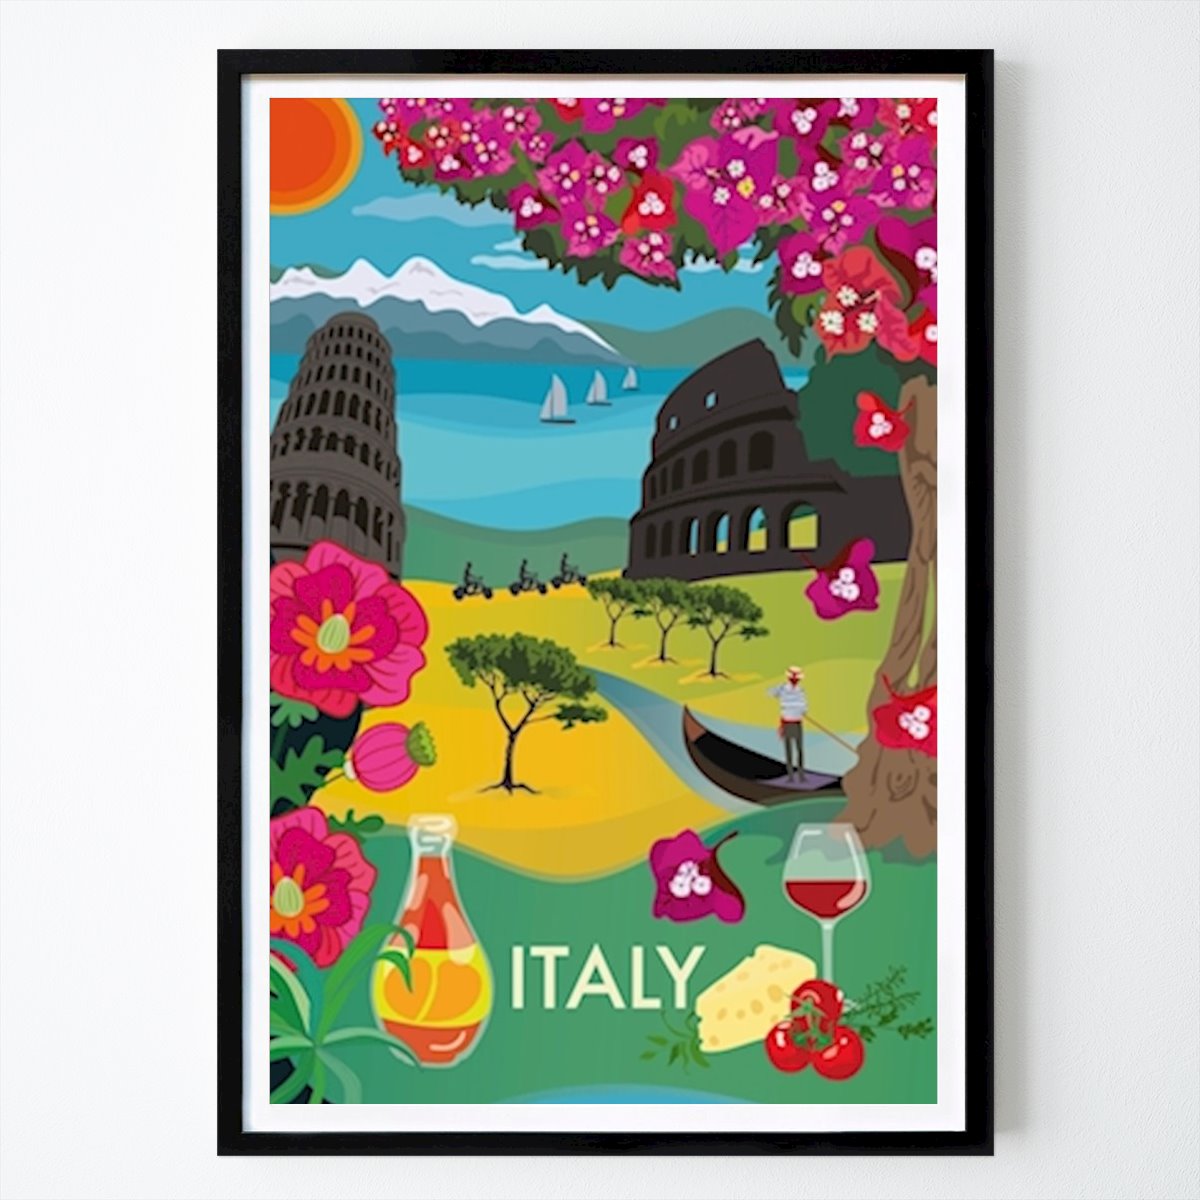 Poster: Cityposter ITALIEN von Lottis Karlsson, Lottisson Design von Printler